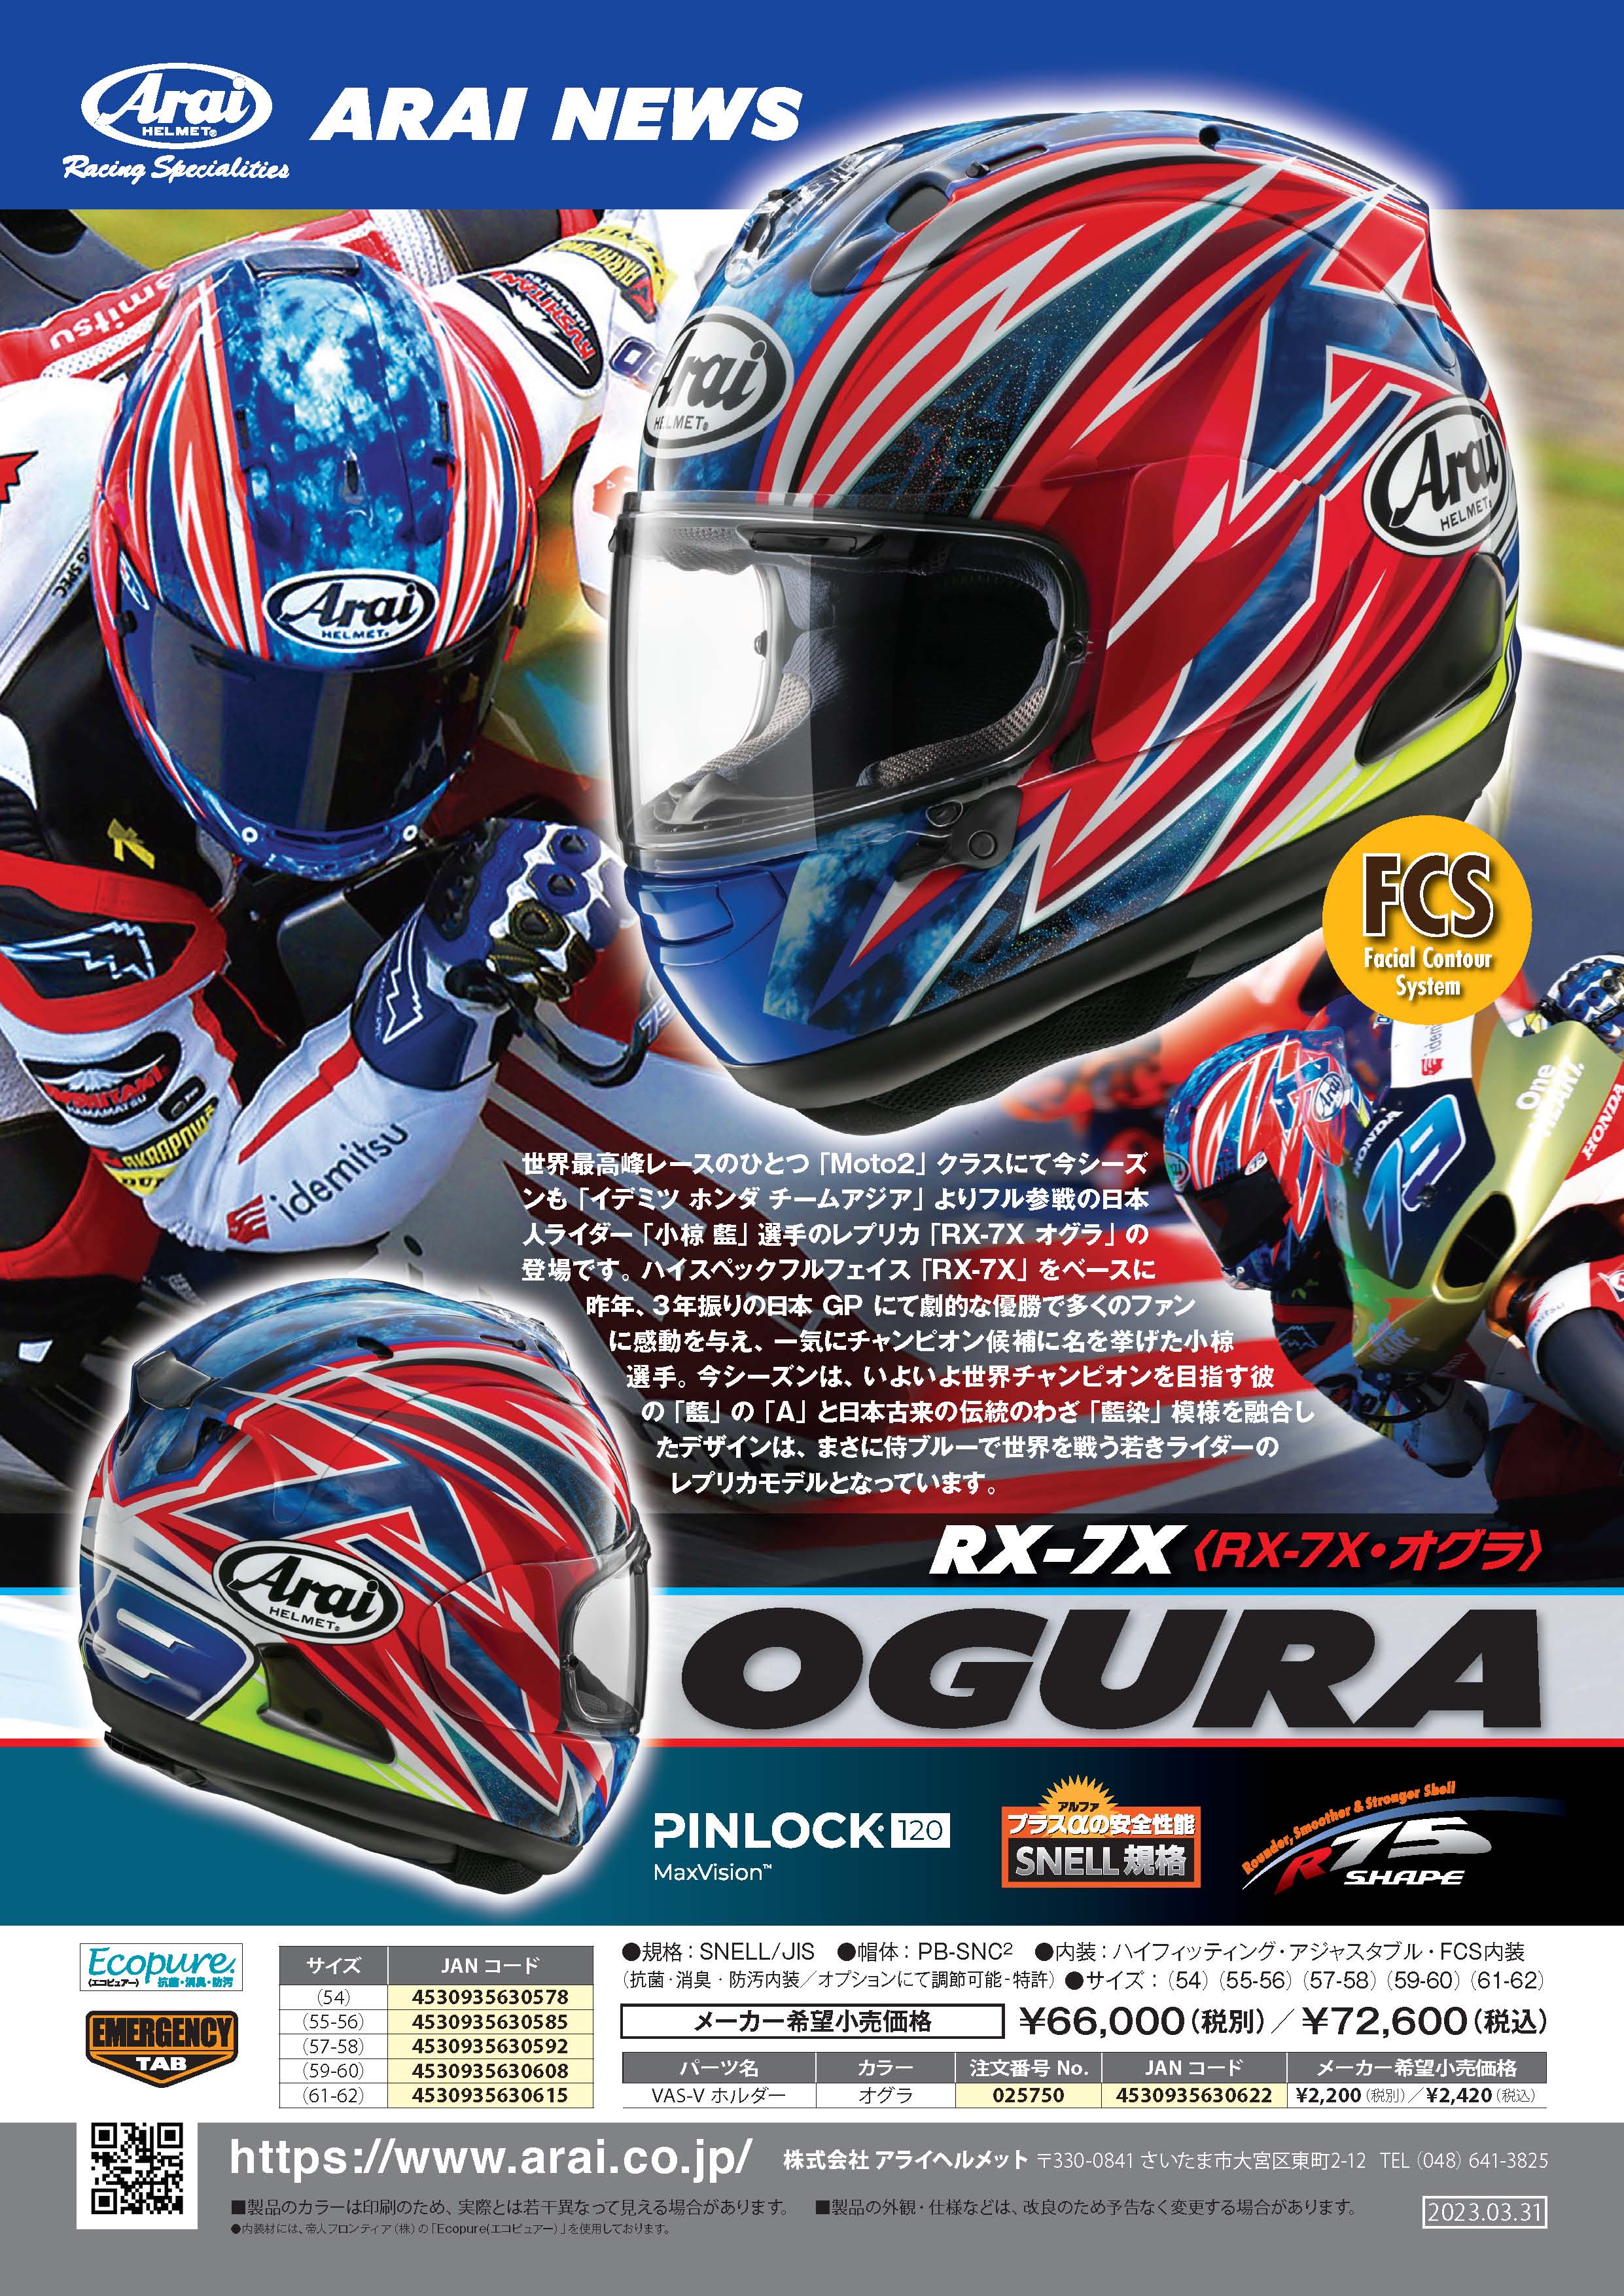 RX-7X_OGURA_300ppi